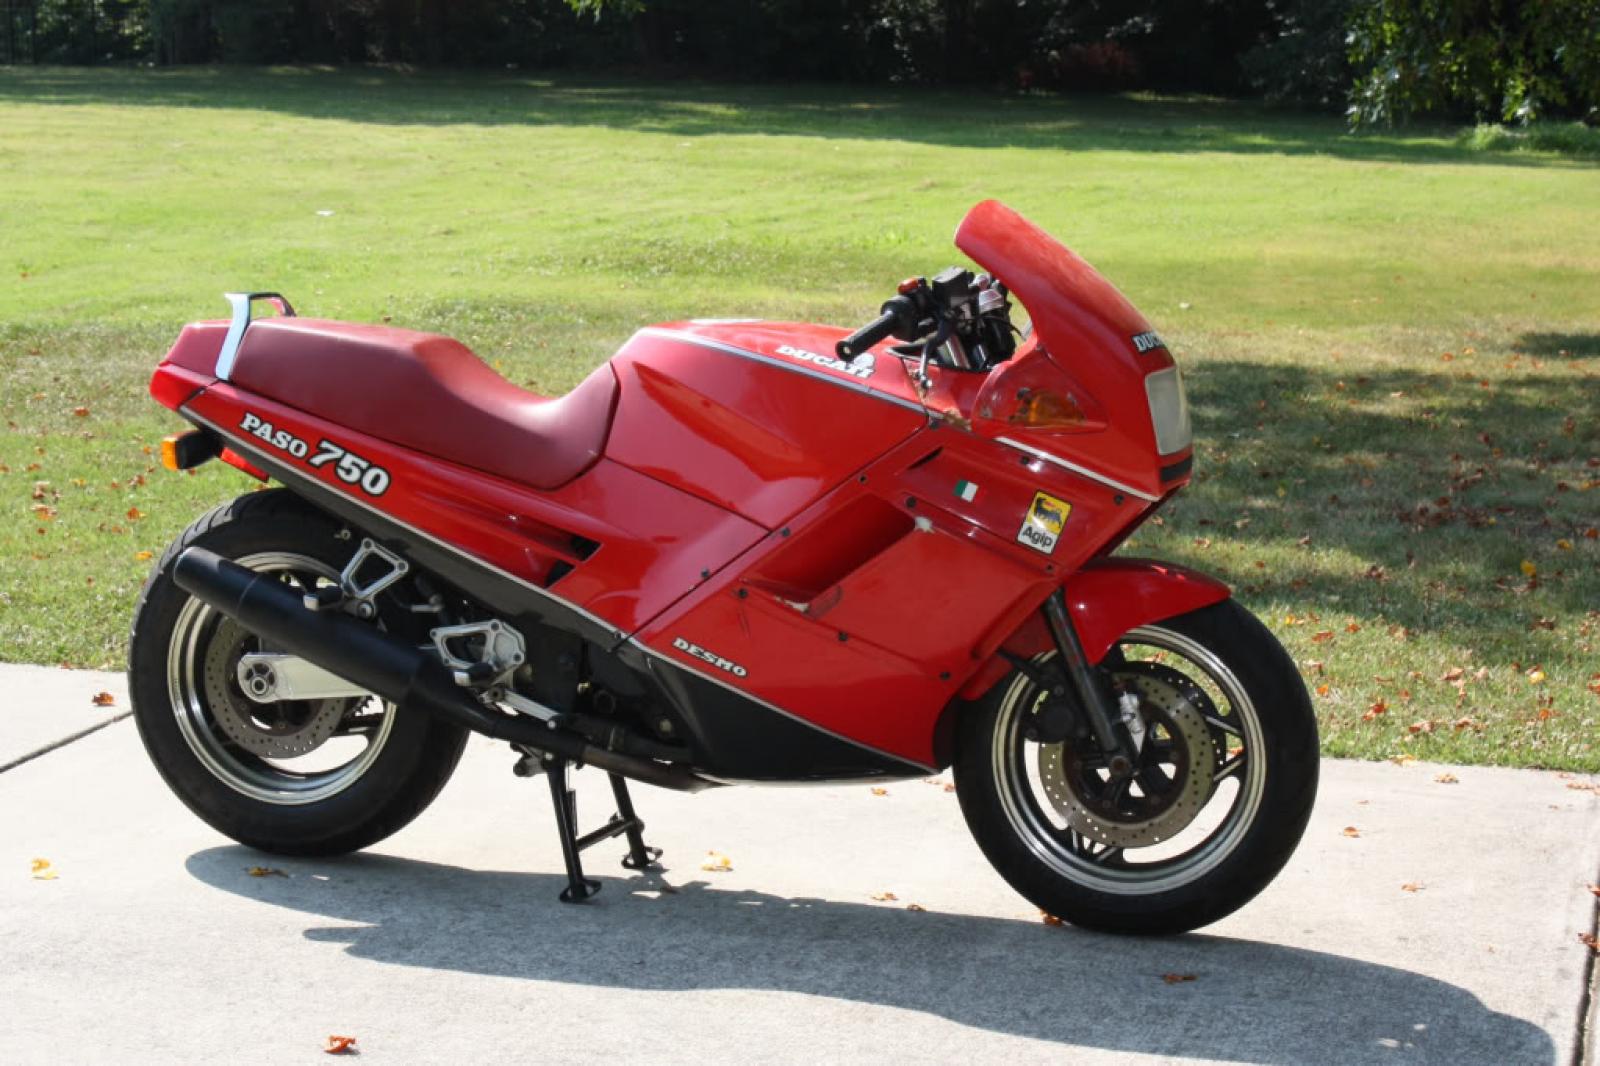 Ducati 750 Paso 1987 photo - 3